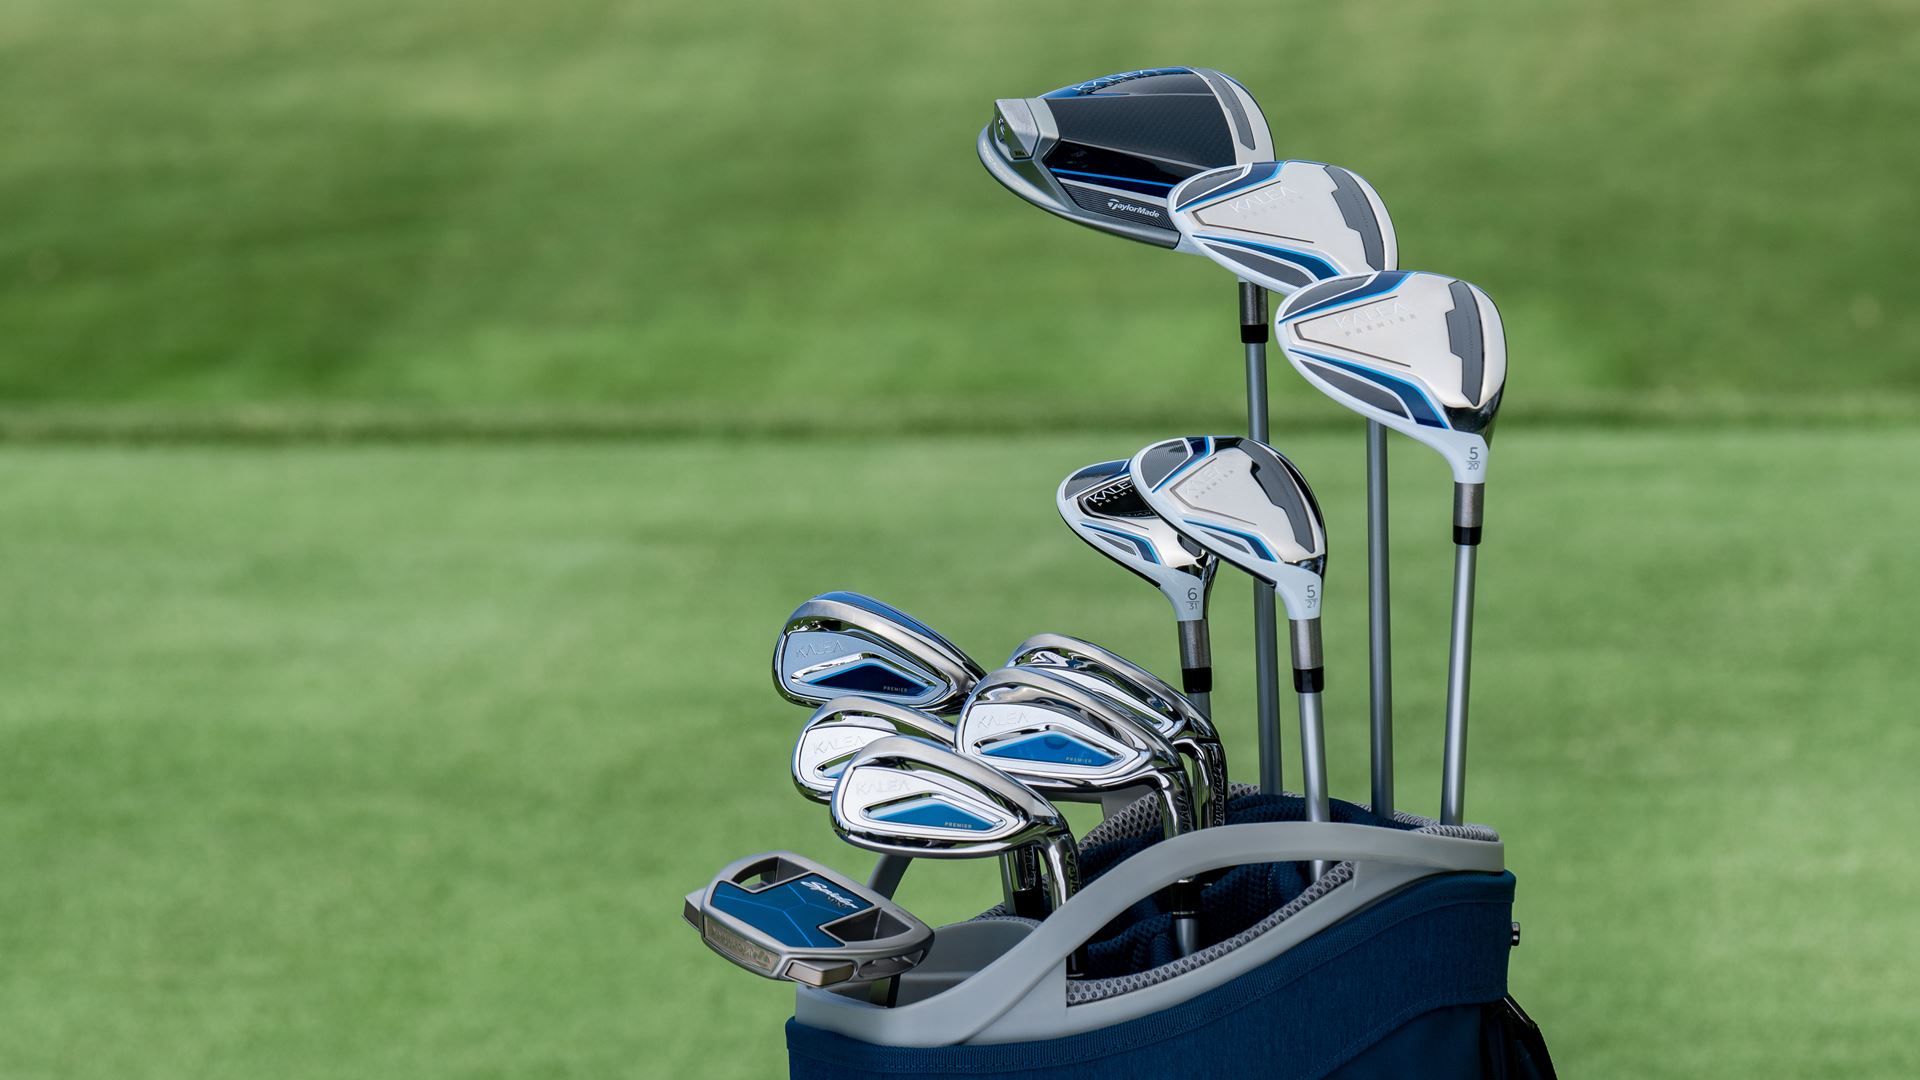 La société TaylorMade Golf lance les Kalea Premier: la technologie haut de gamme jumelée à l’élégance pour les golfeuses